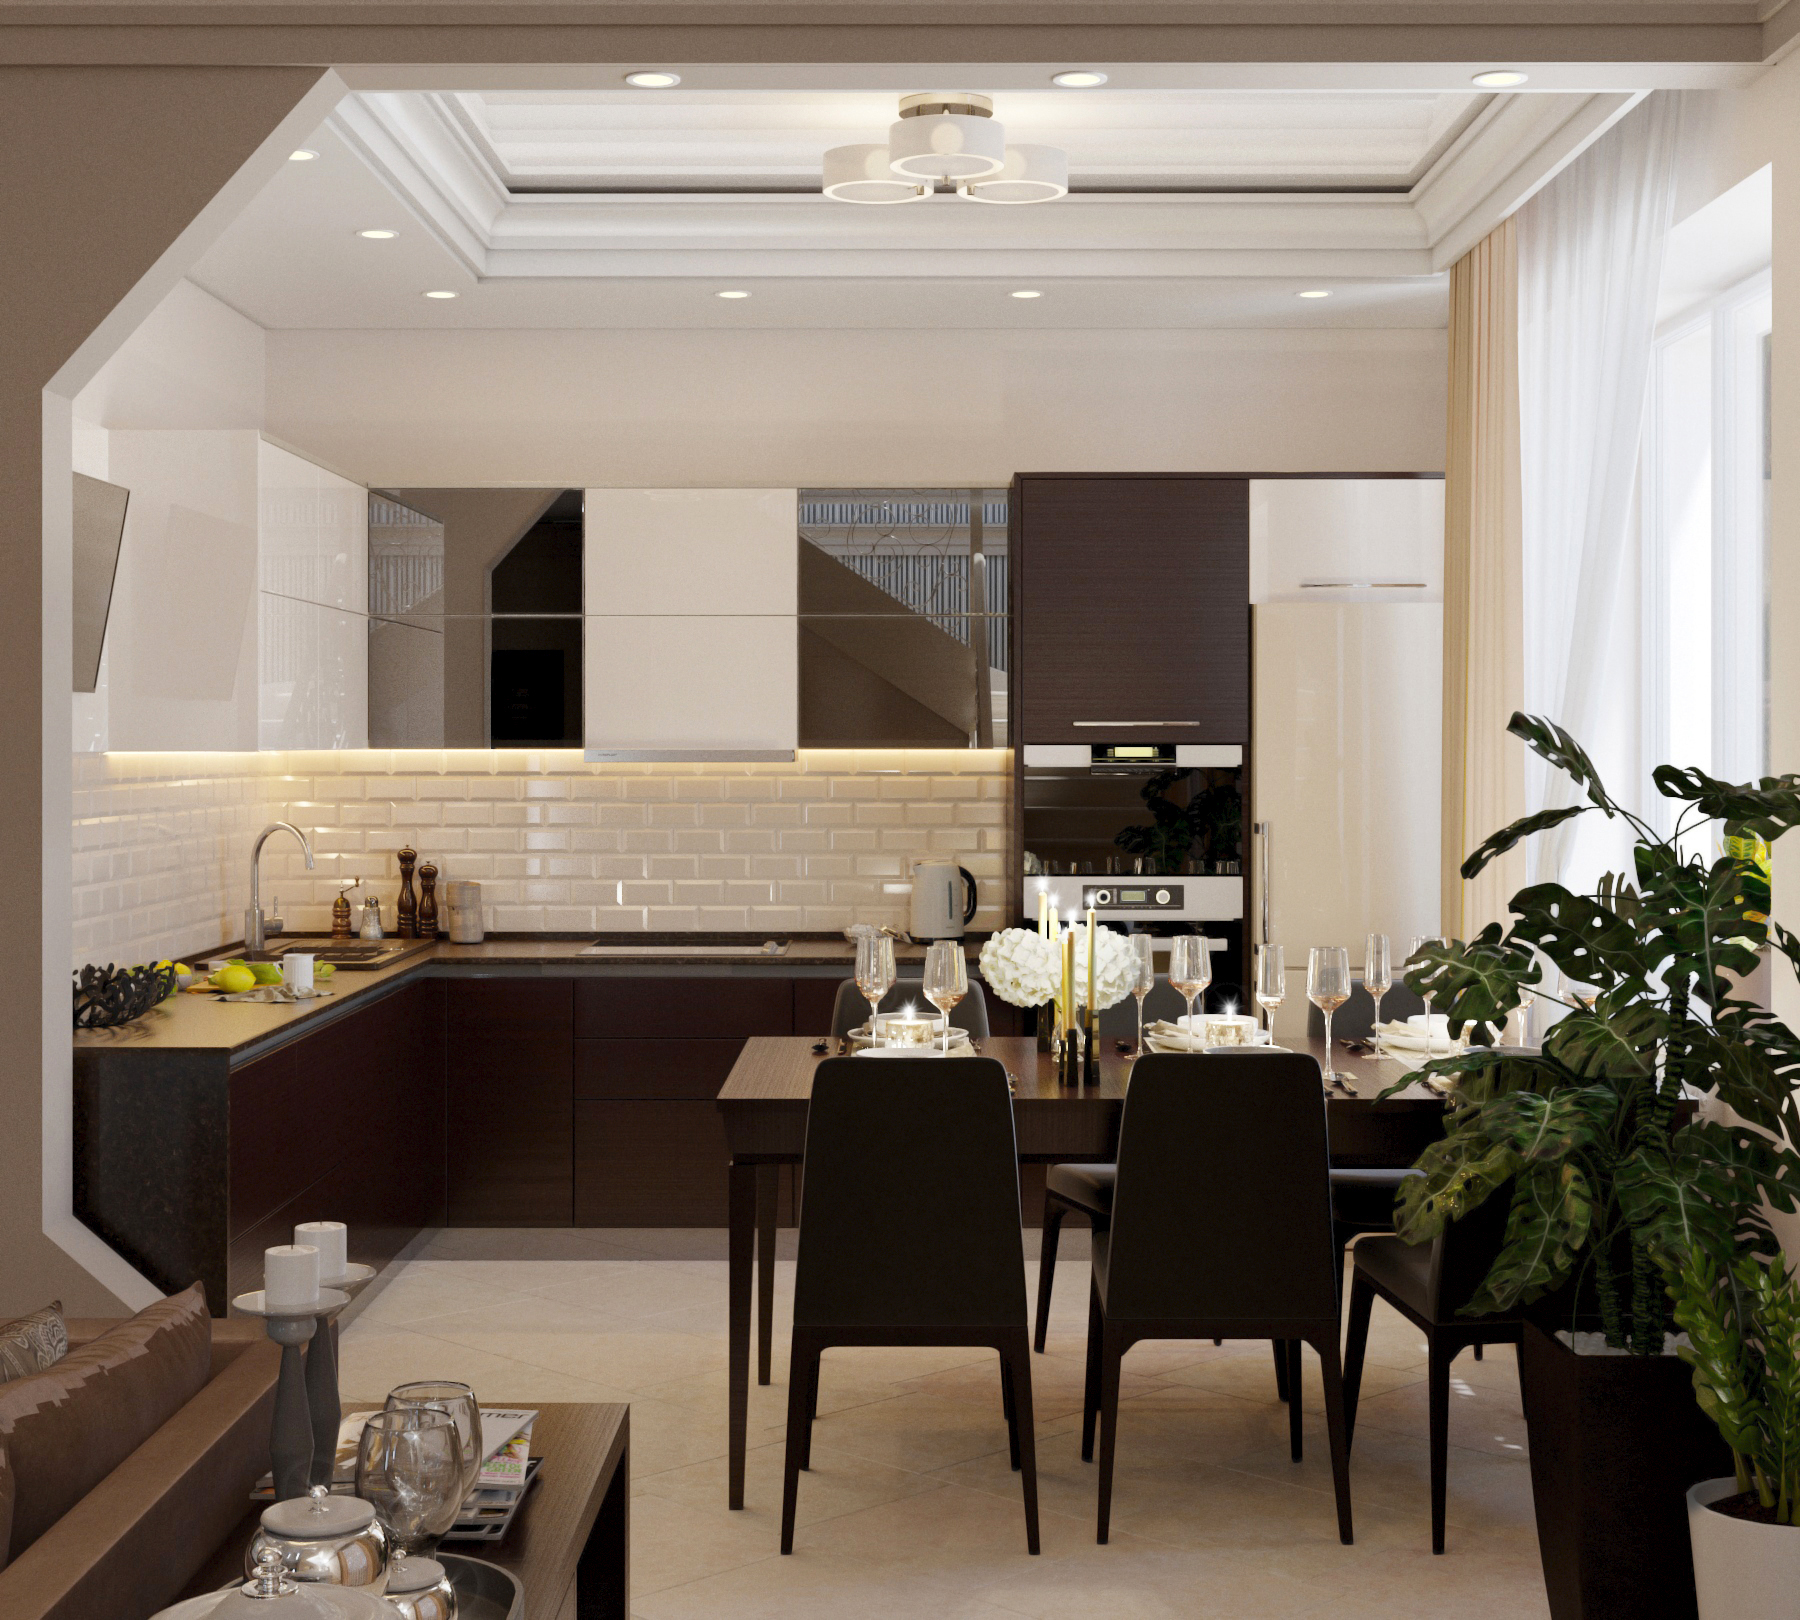 Couloir de la cuisine dans 3d max corona render image